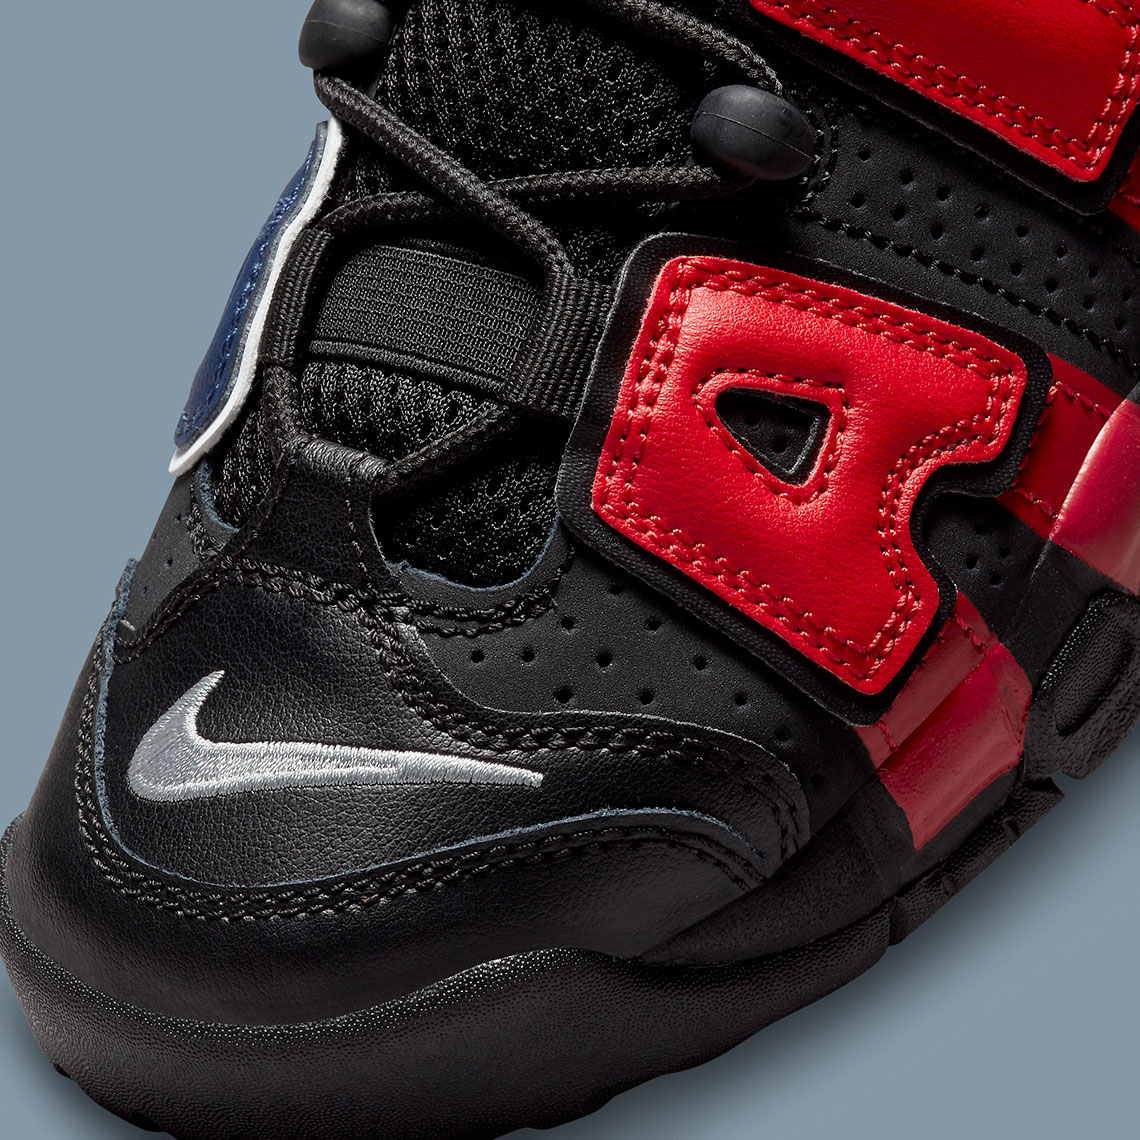 Nike Air More Uptempo Black Navy Red DM0017-001 | SneakerNews.com